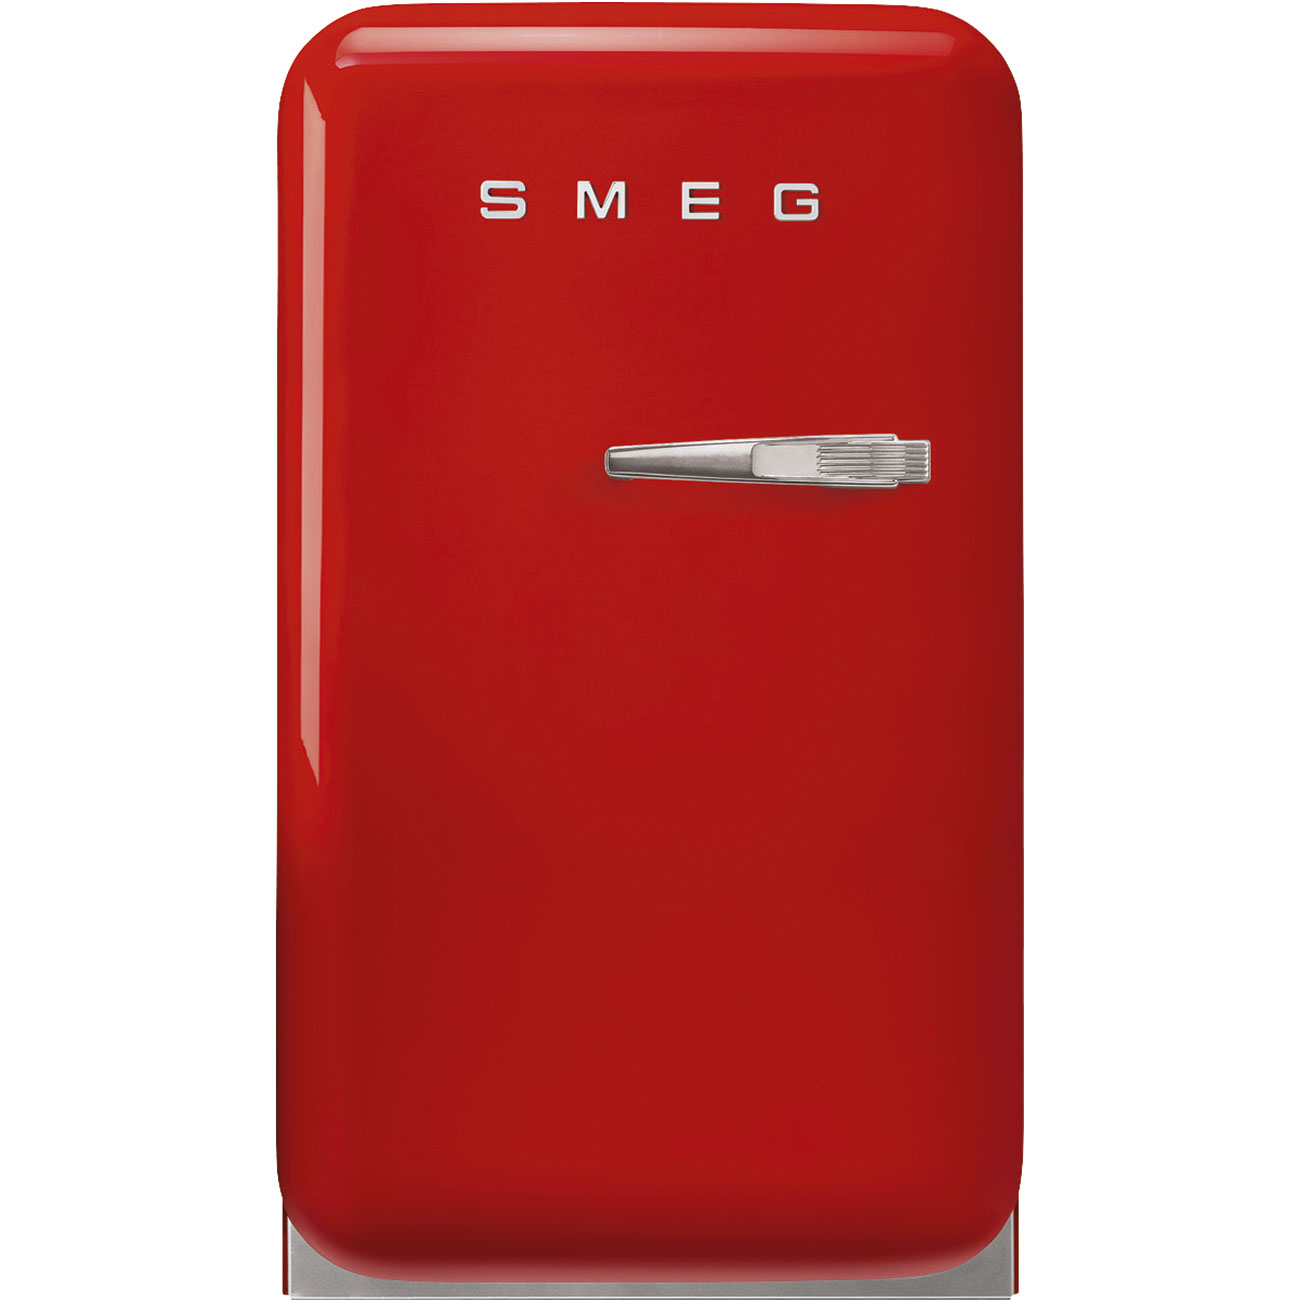 En låge Fritstående refrigerator - Smeg_1